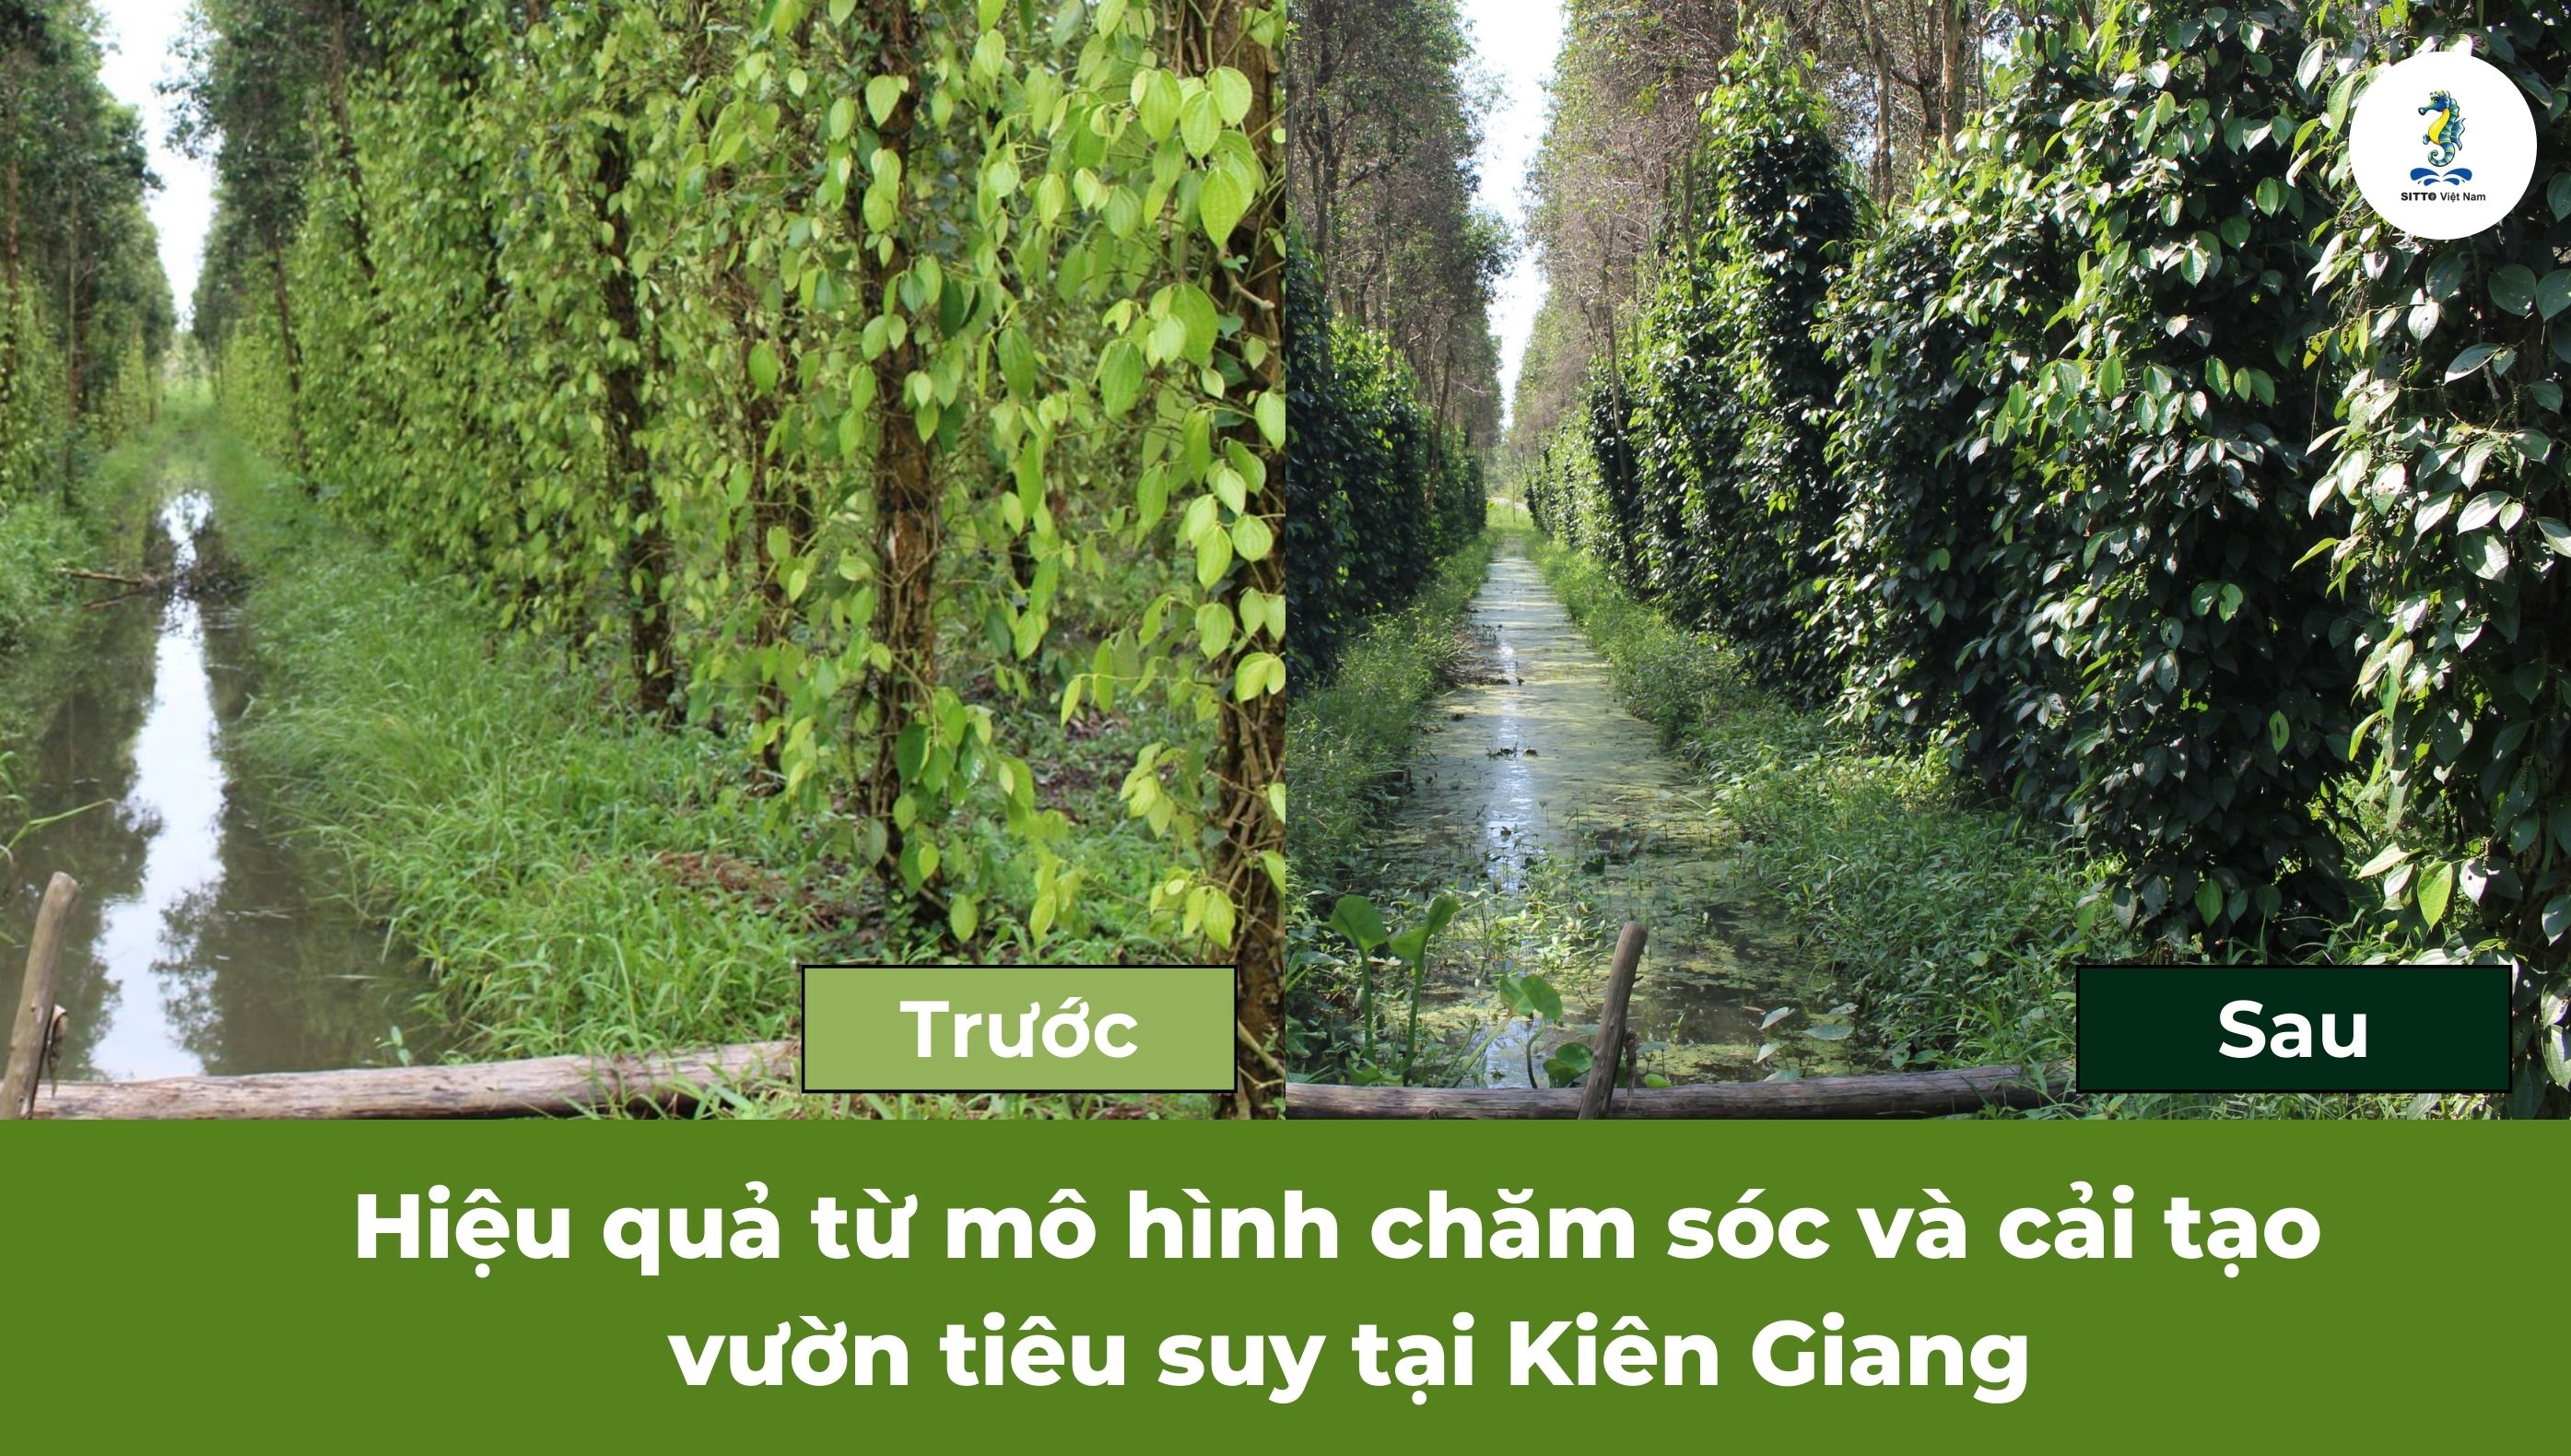 Hiệu quả từ mô hình chăm sóc và cải tạo vườn hồ tiêu suy tại Kiên Giang